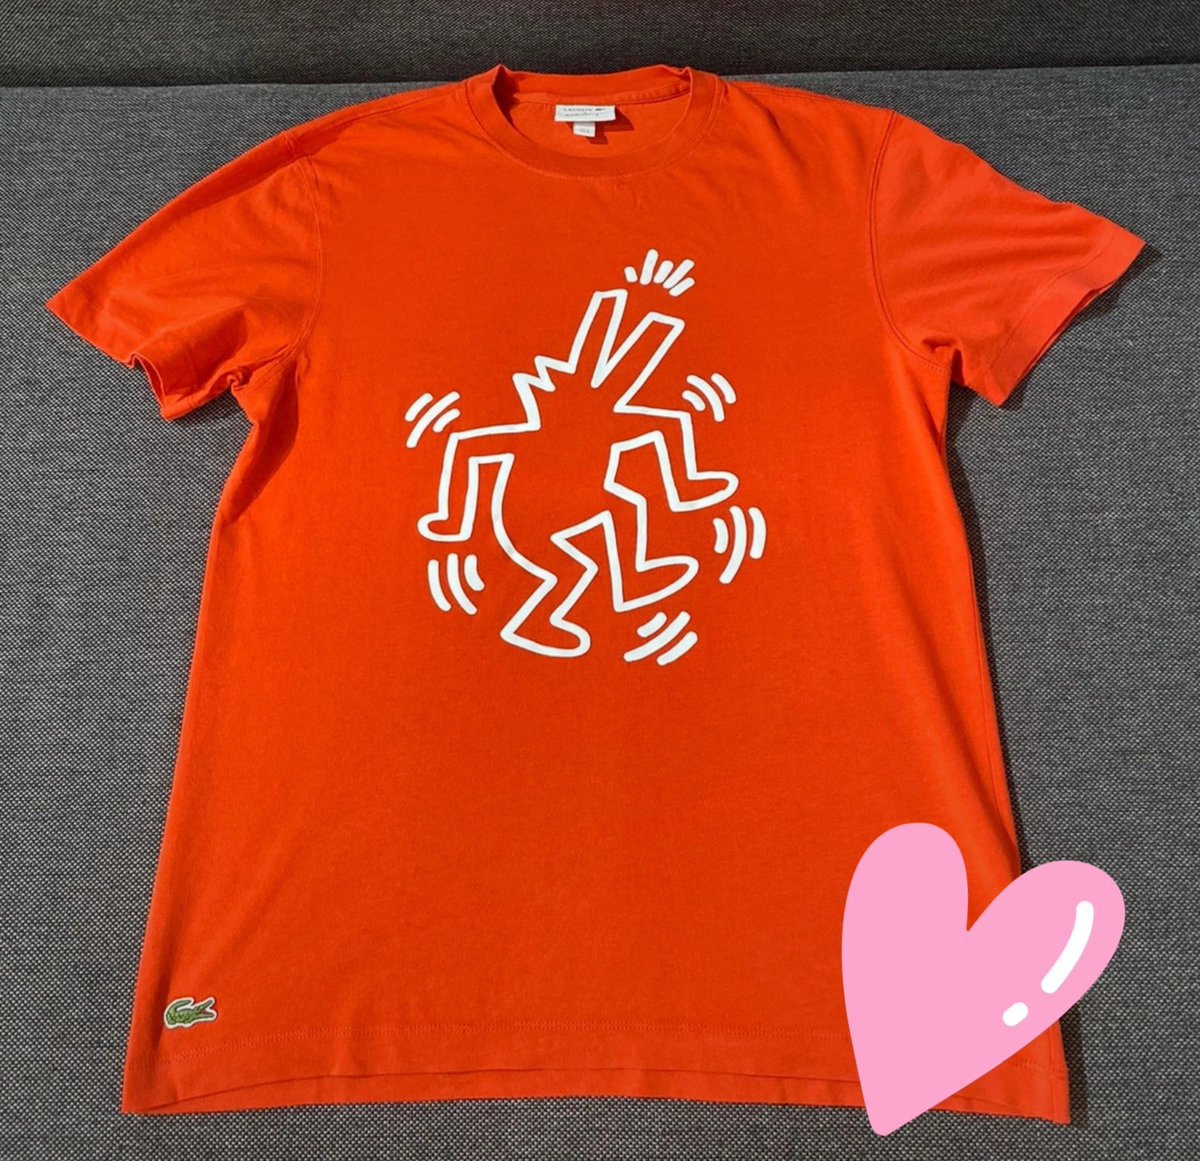 Om mezelf wat op te vrolijken heb ik een leuk Keith Haring / Lacoste shirt op de kop getikt op @vinted 
voor slechts €10,- 
(winkel prijs €159,-)

 whoop whoop kikke deal toch ? 

#deal #vinted #keithharing #laCoste #fashion